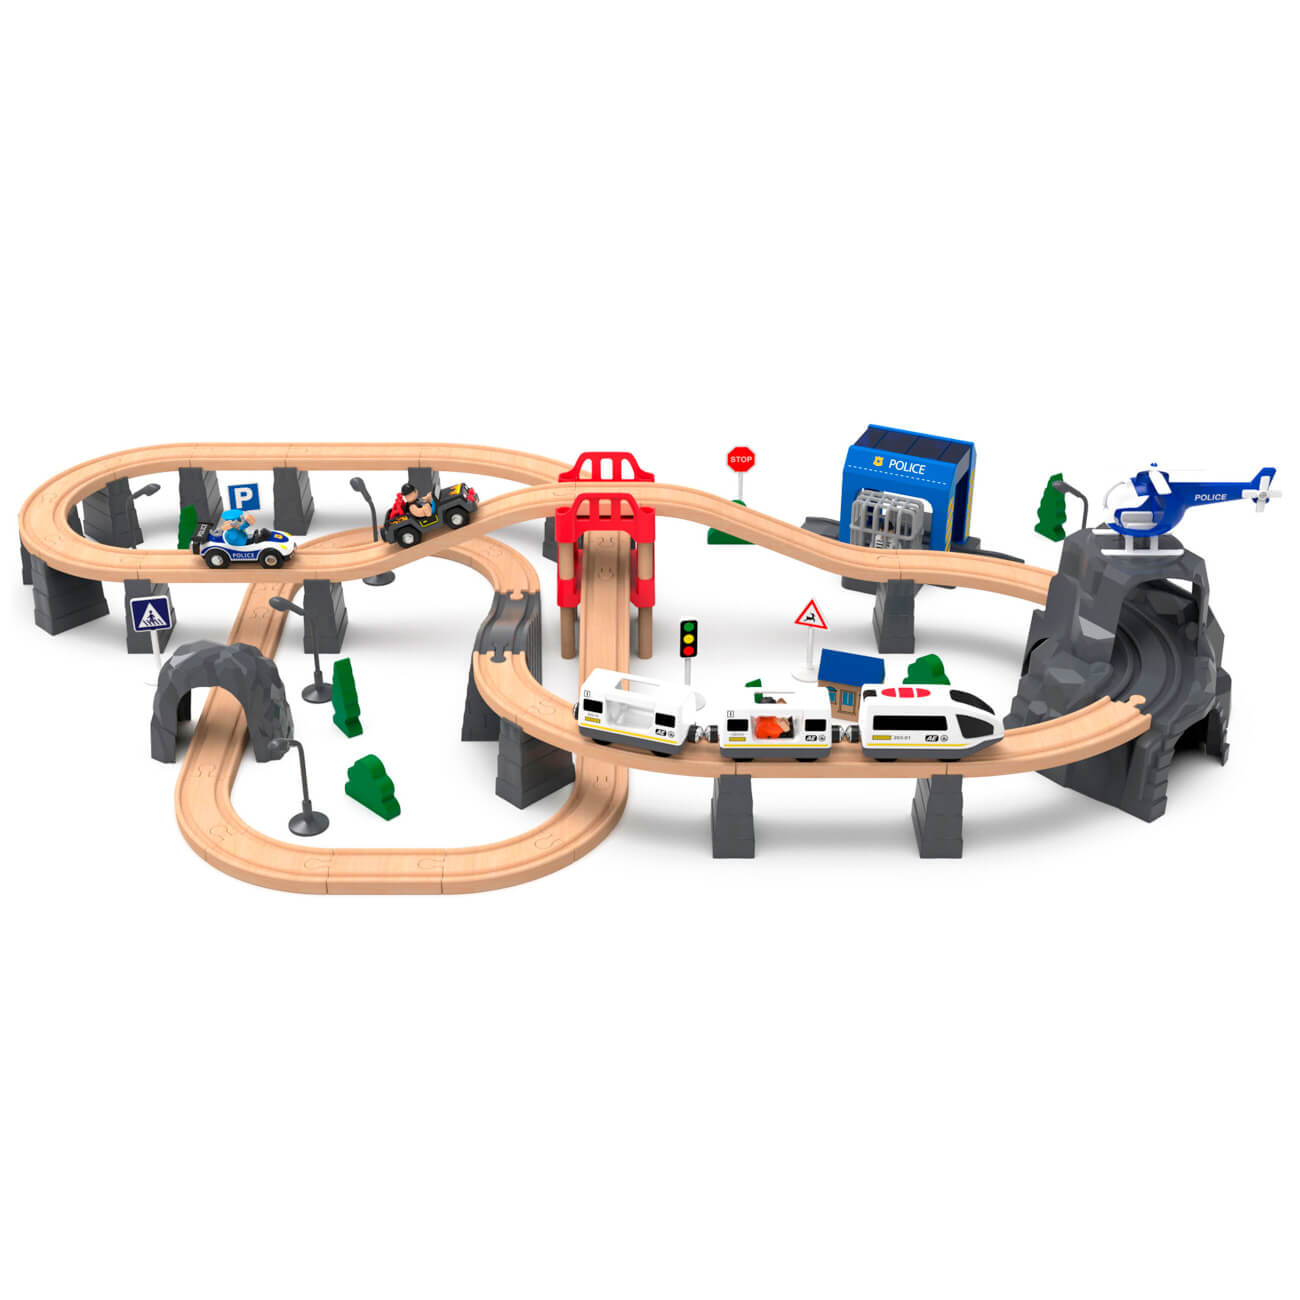 Железная дорога игрушечная, 98 см, дерево/пластик, Электропоезд, Game rail контейнер пищевой пластик 0 5 л прямоугольный бытпласт phibo eco style 433121236